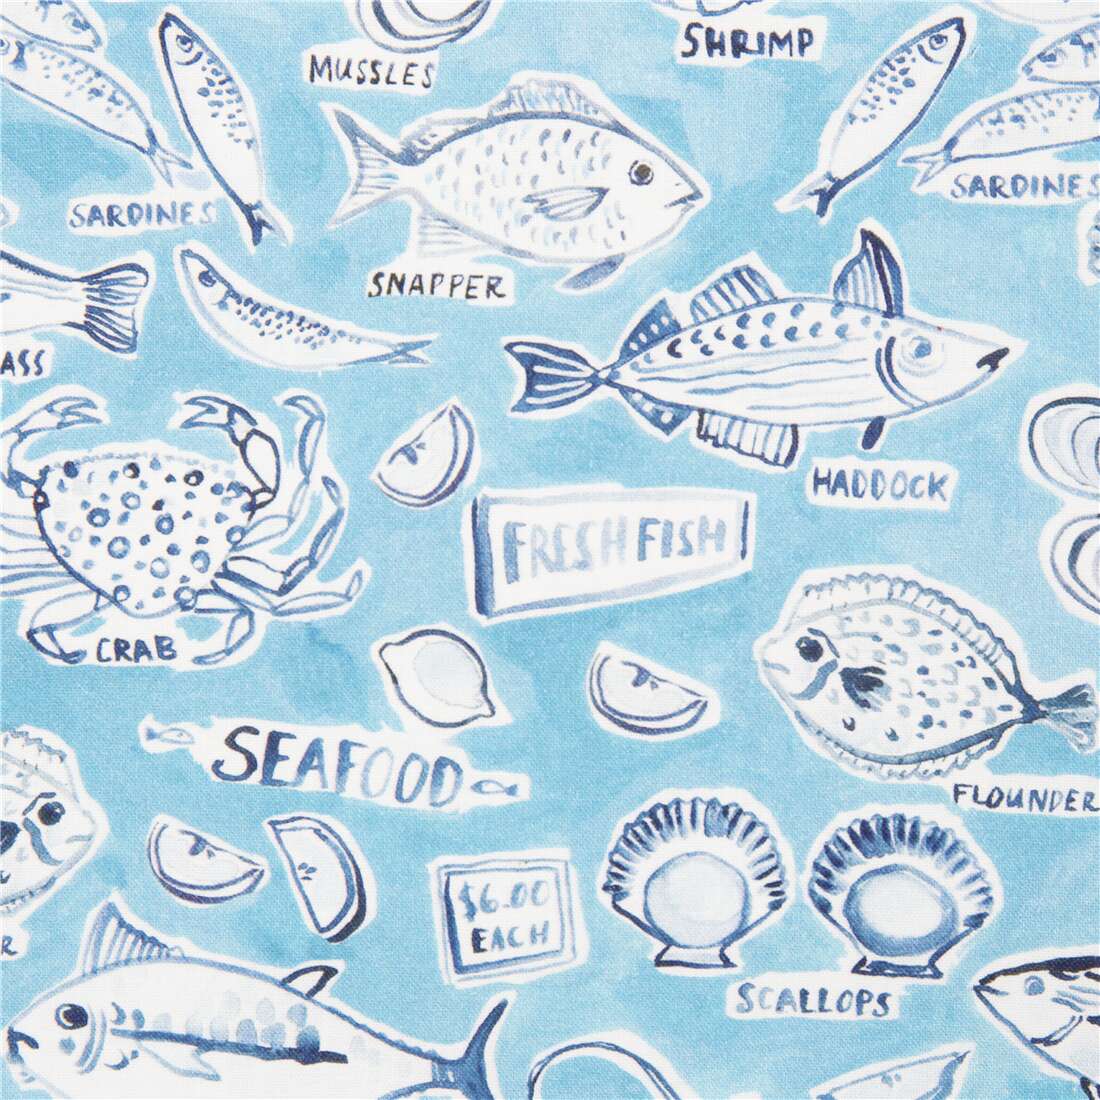 https://kawaii.kawaii.at/images/product_images/big_images/Fish-and-shellfish-market-illustrated-watercolour-blue-cotton-fabric-Dear-Stella-249224-4.jpg